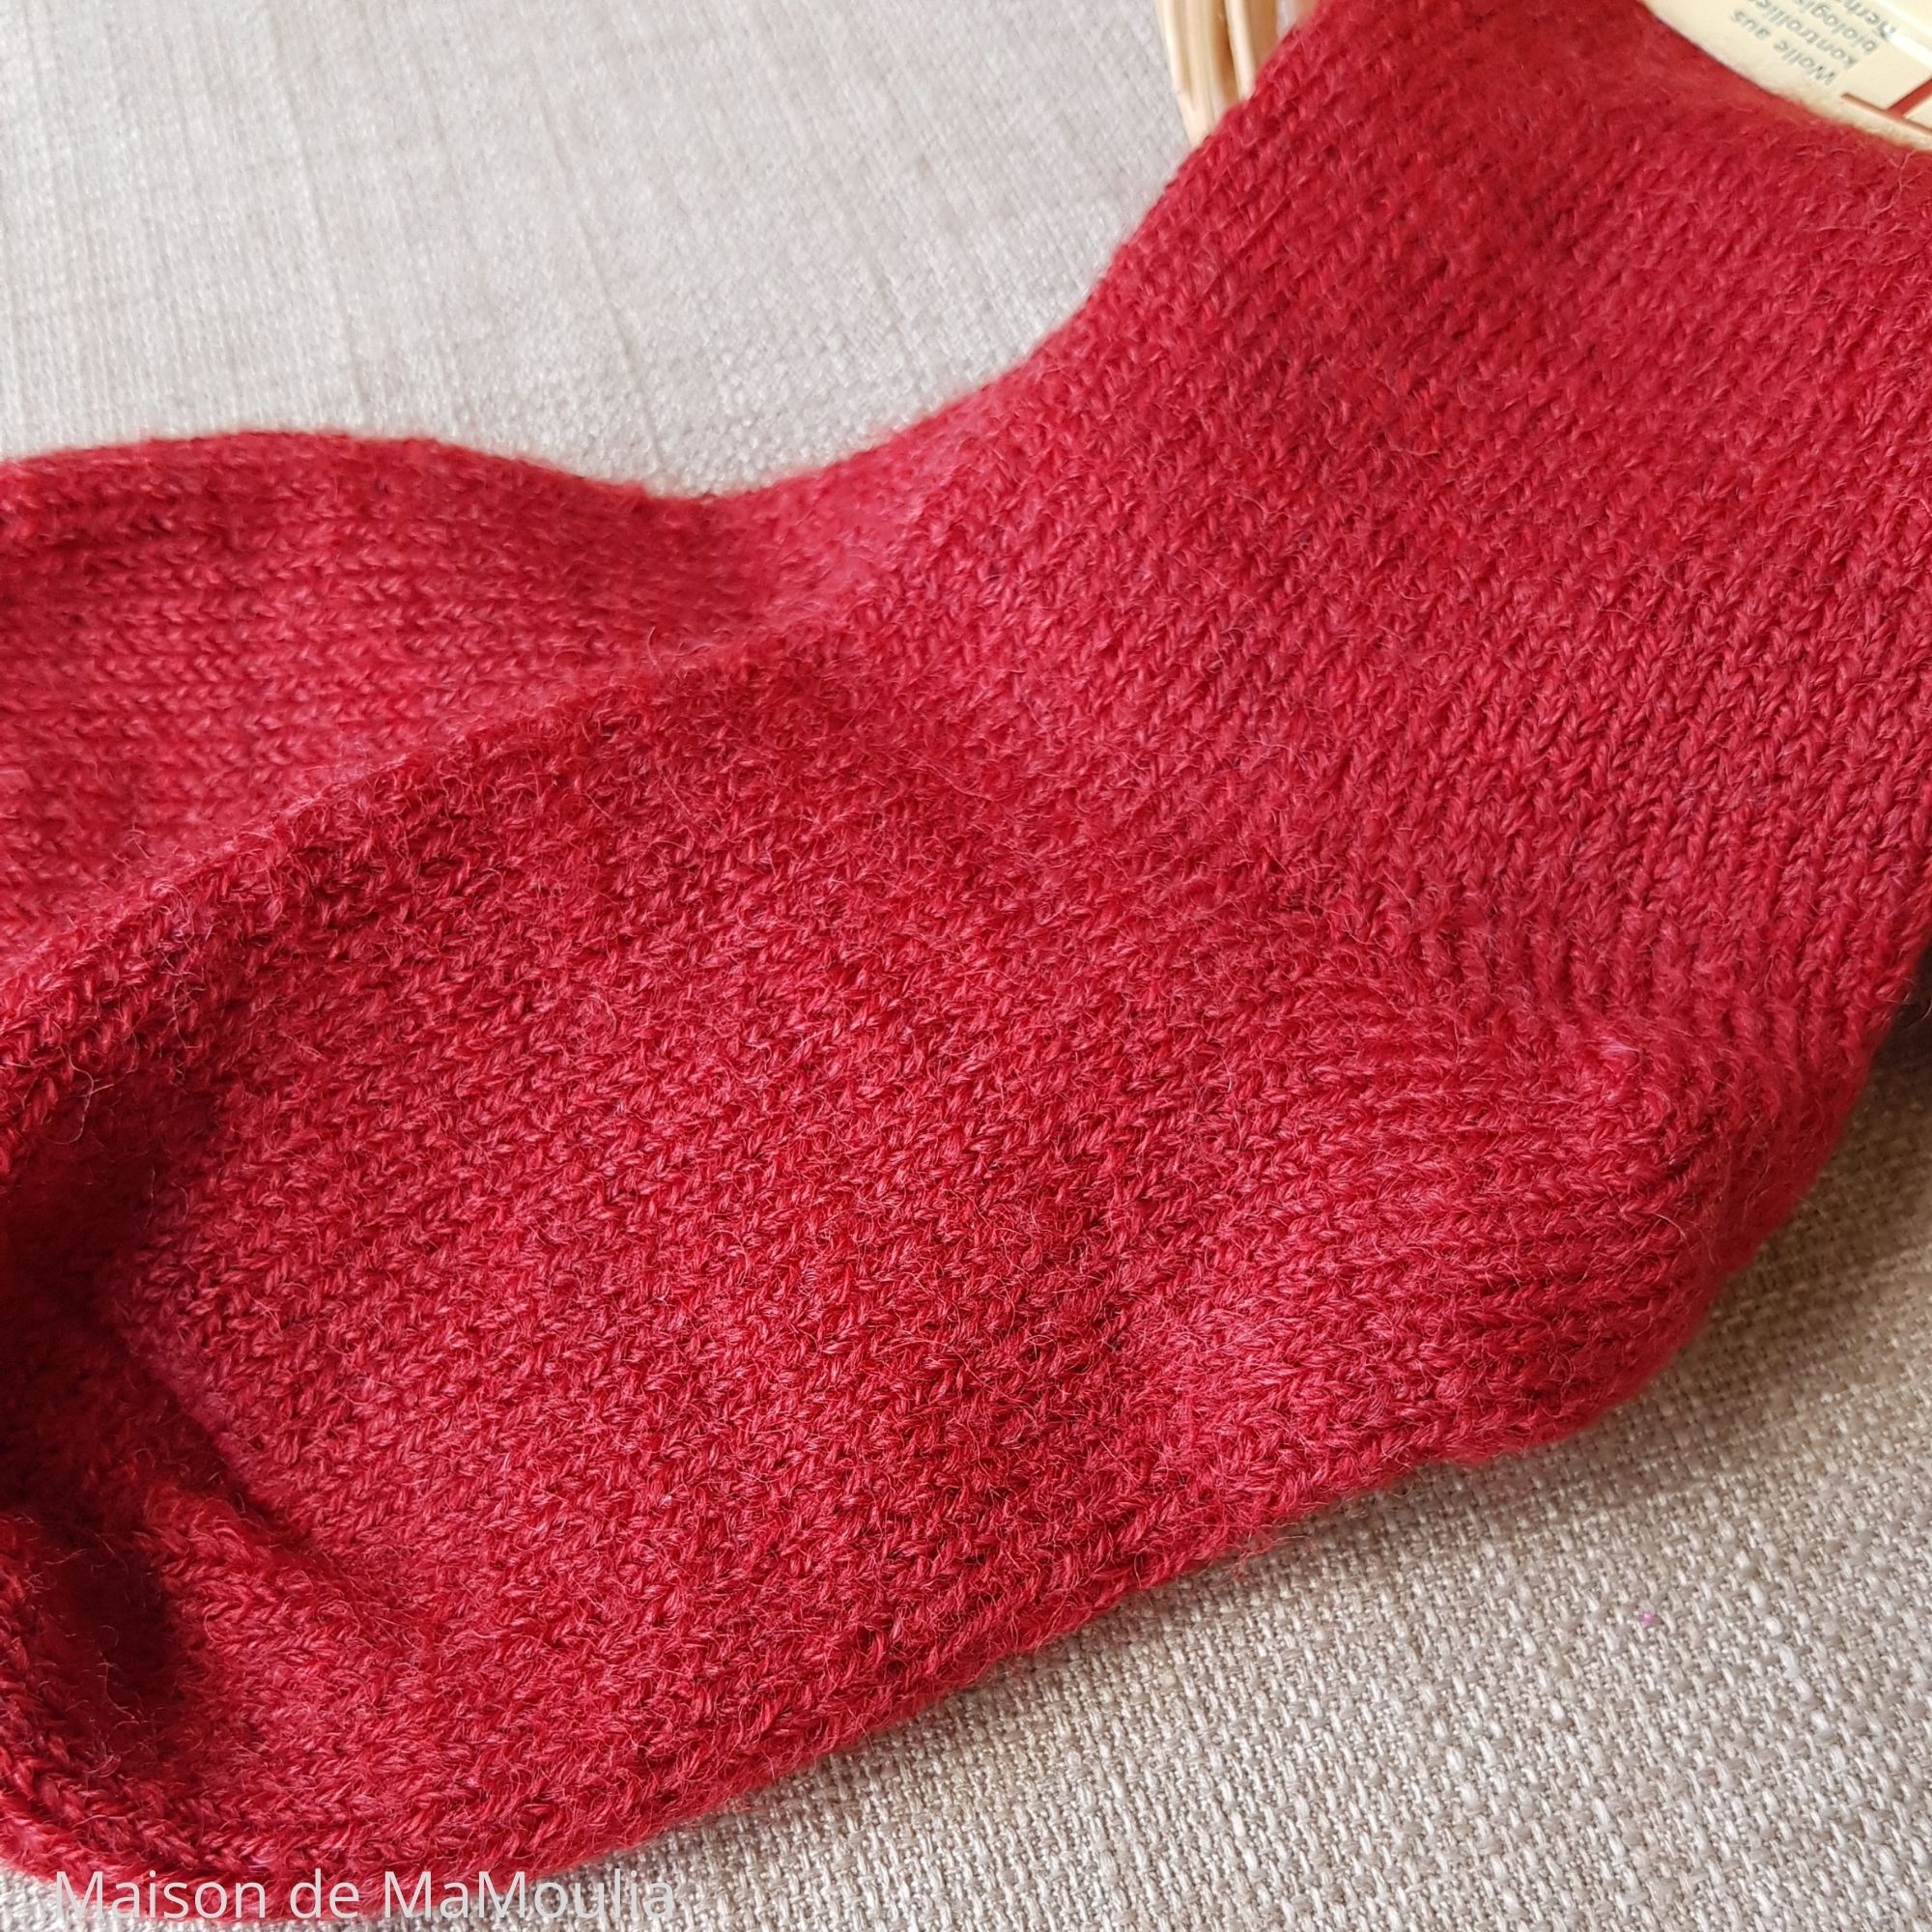 10-chaussettes-chaudes-pure-laine-bio-ecologique-hirsch-natur-bebe-enfant-maison-de-mamoulia-gris-tres-epaisses-rouge